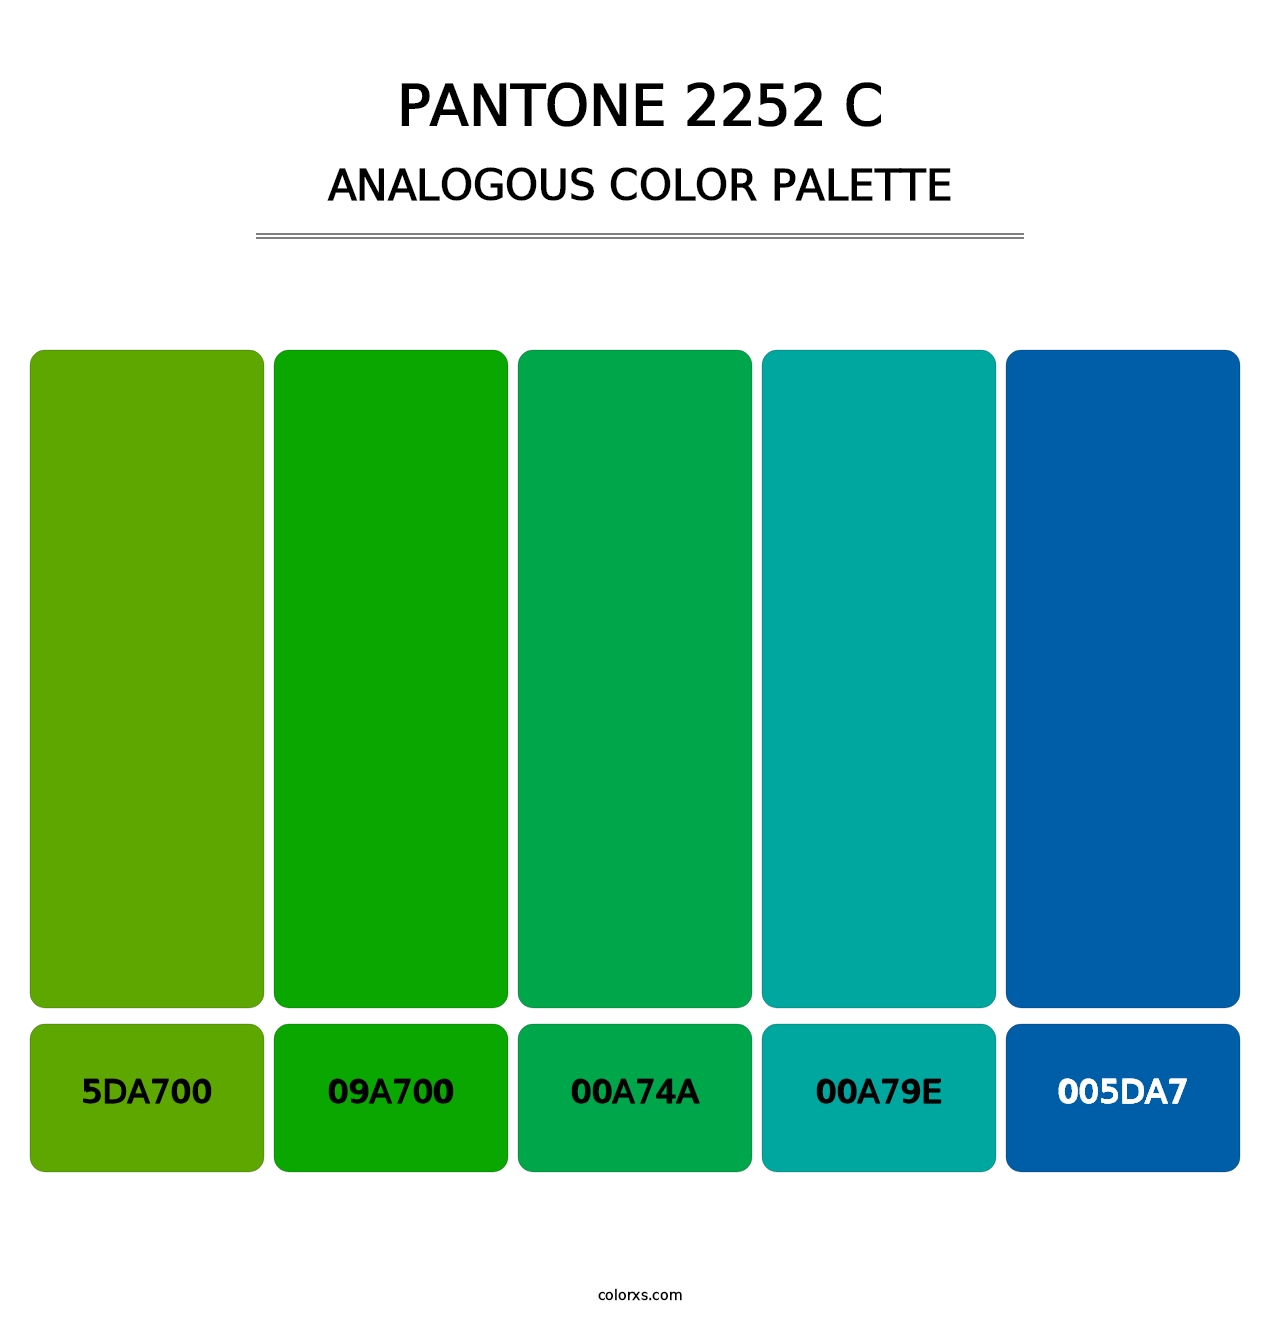 PANTONE 2252 C - Analogous Color Palette